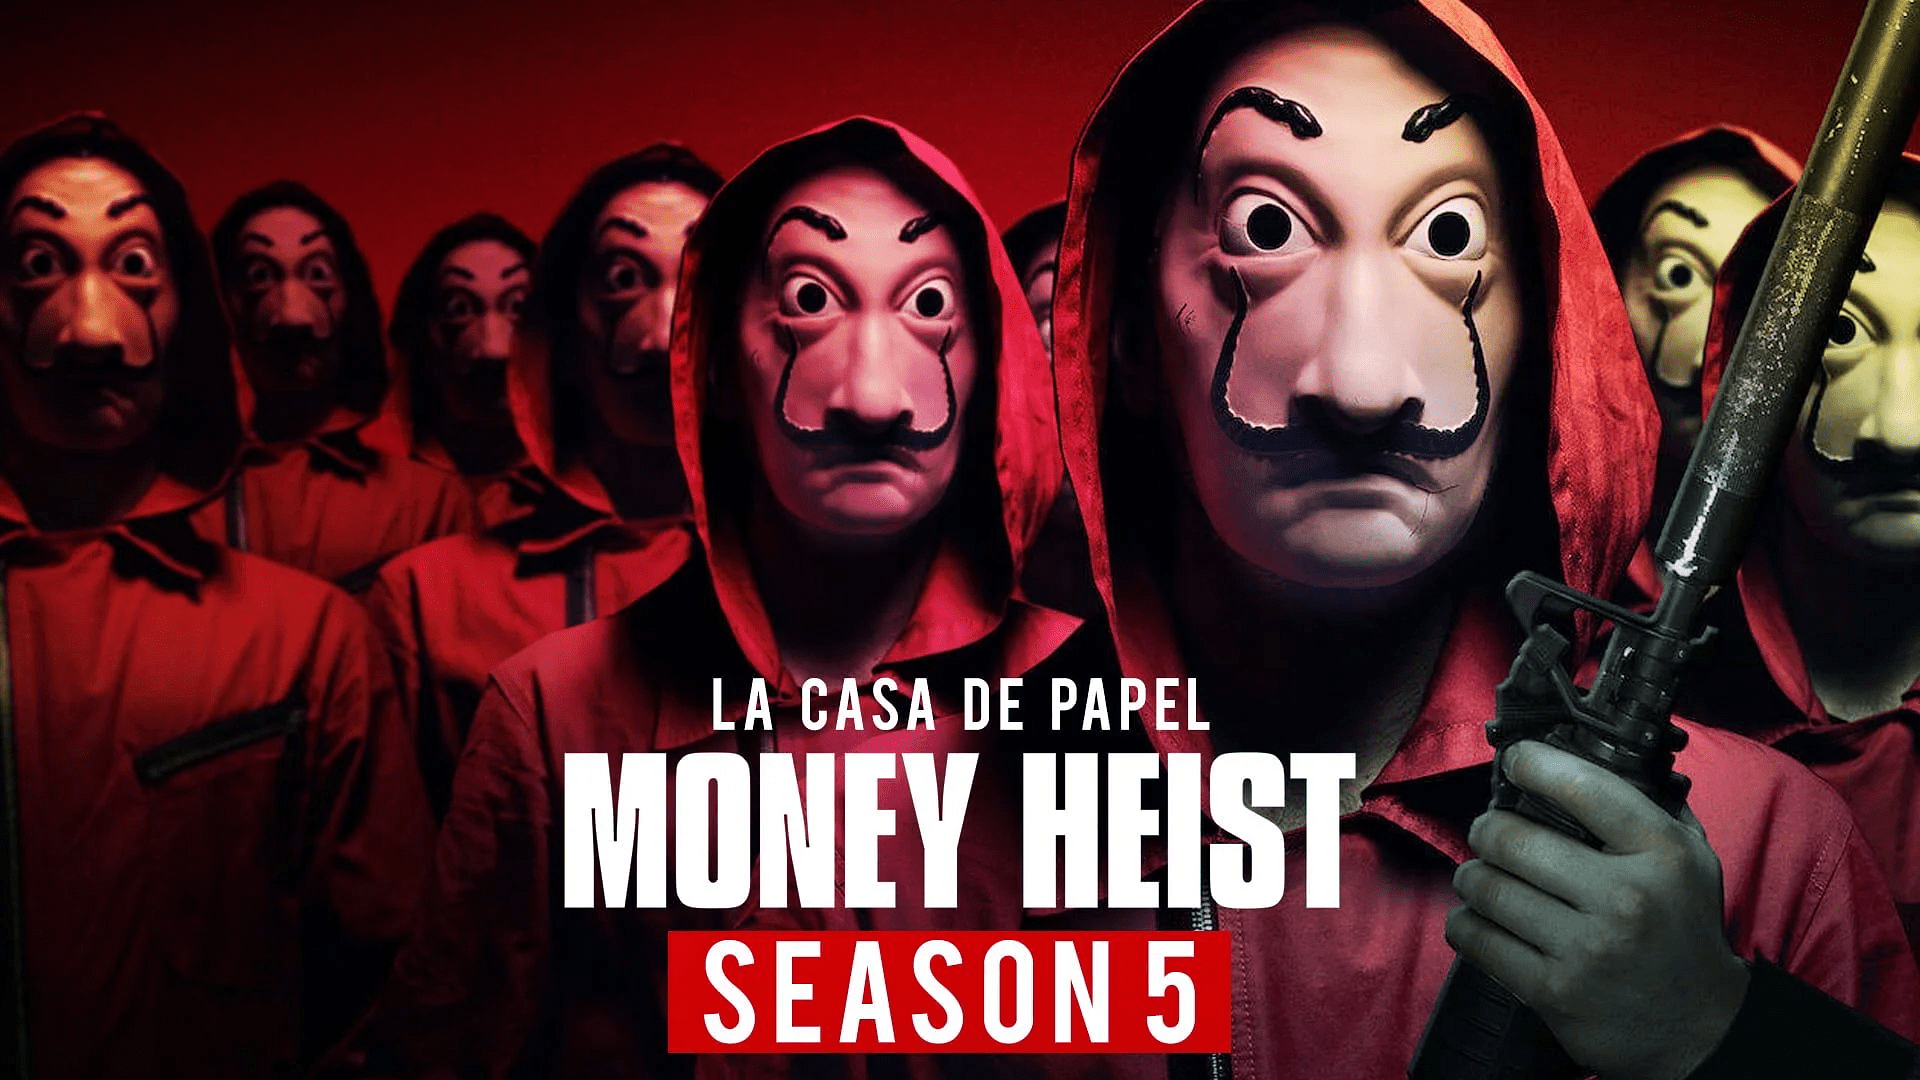 Money heist season 5 part 2